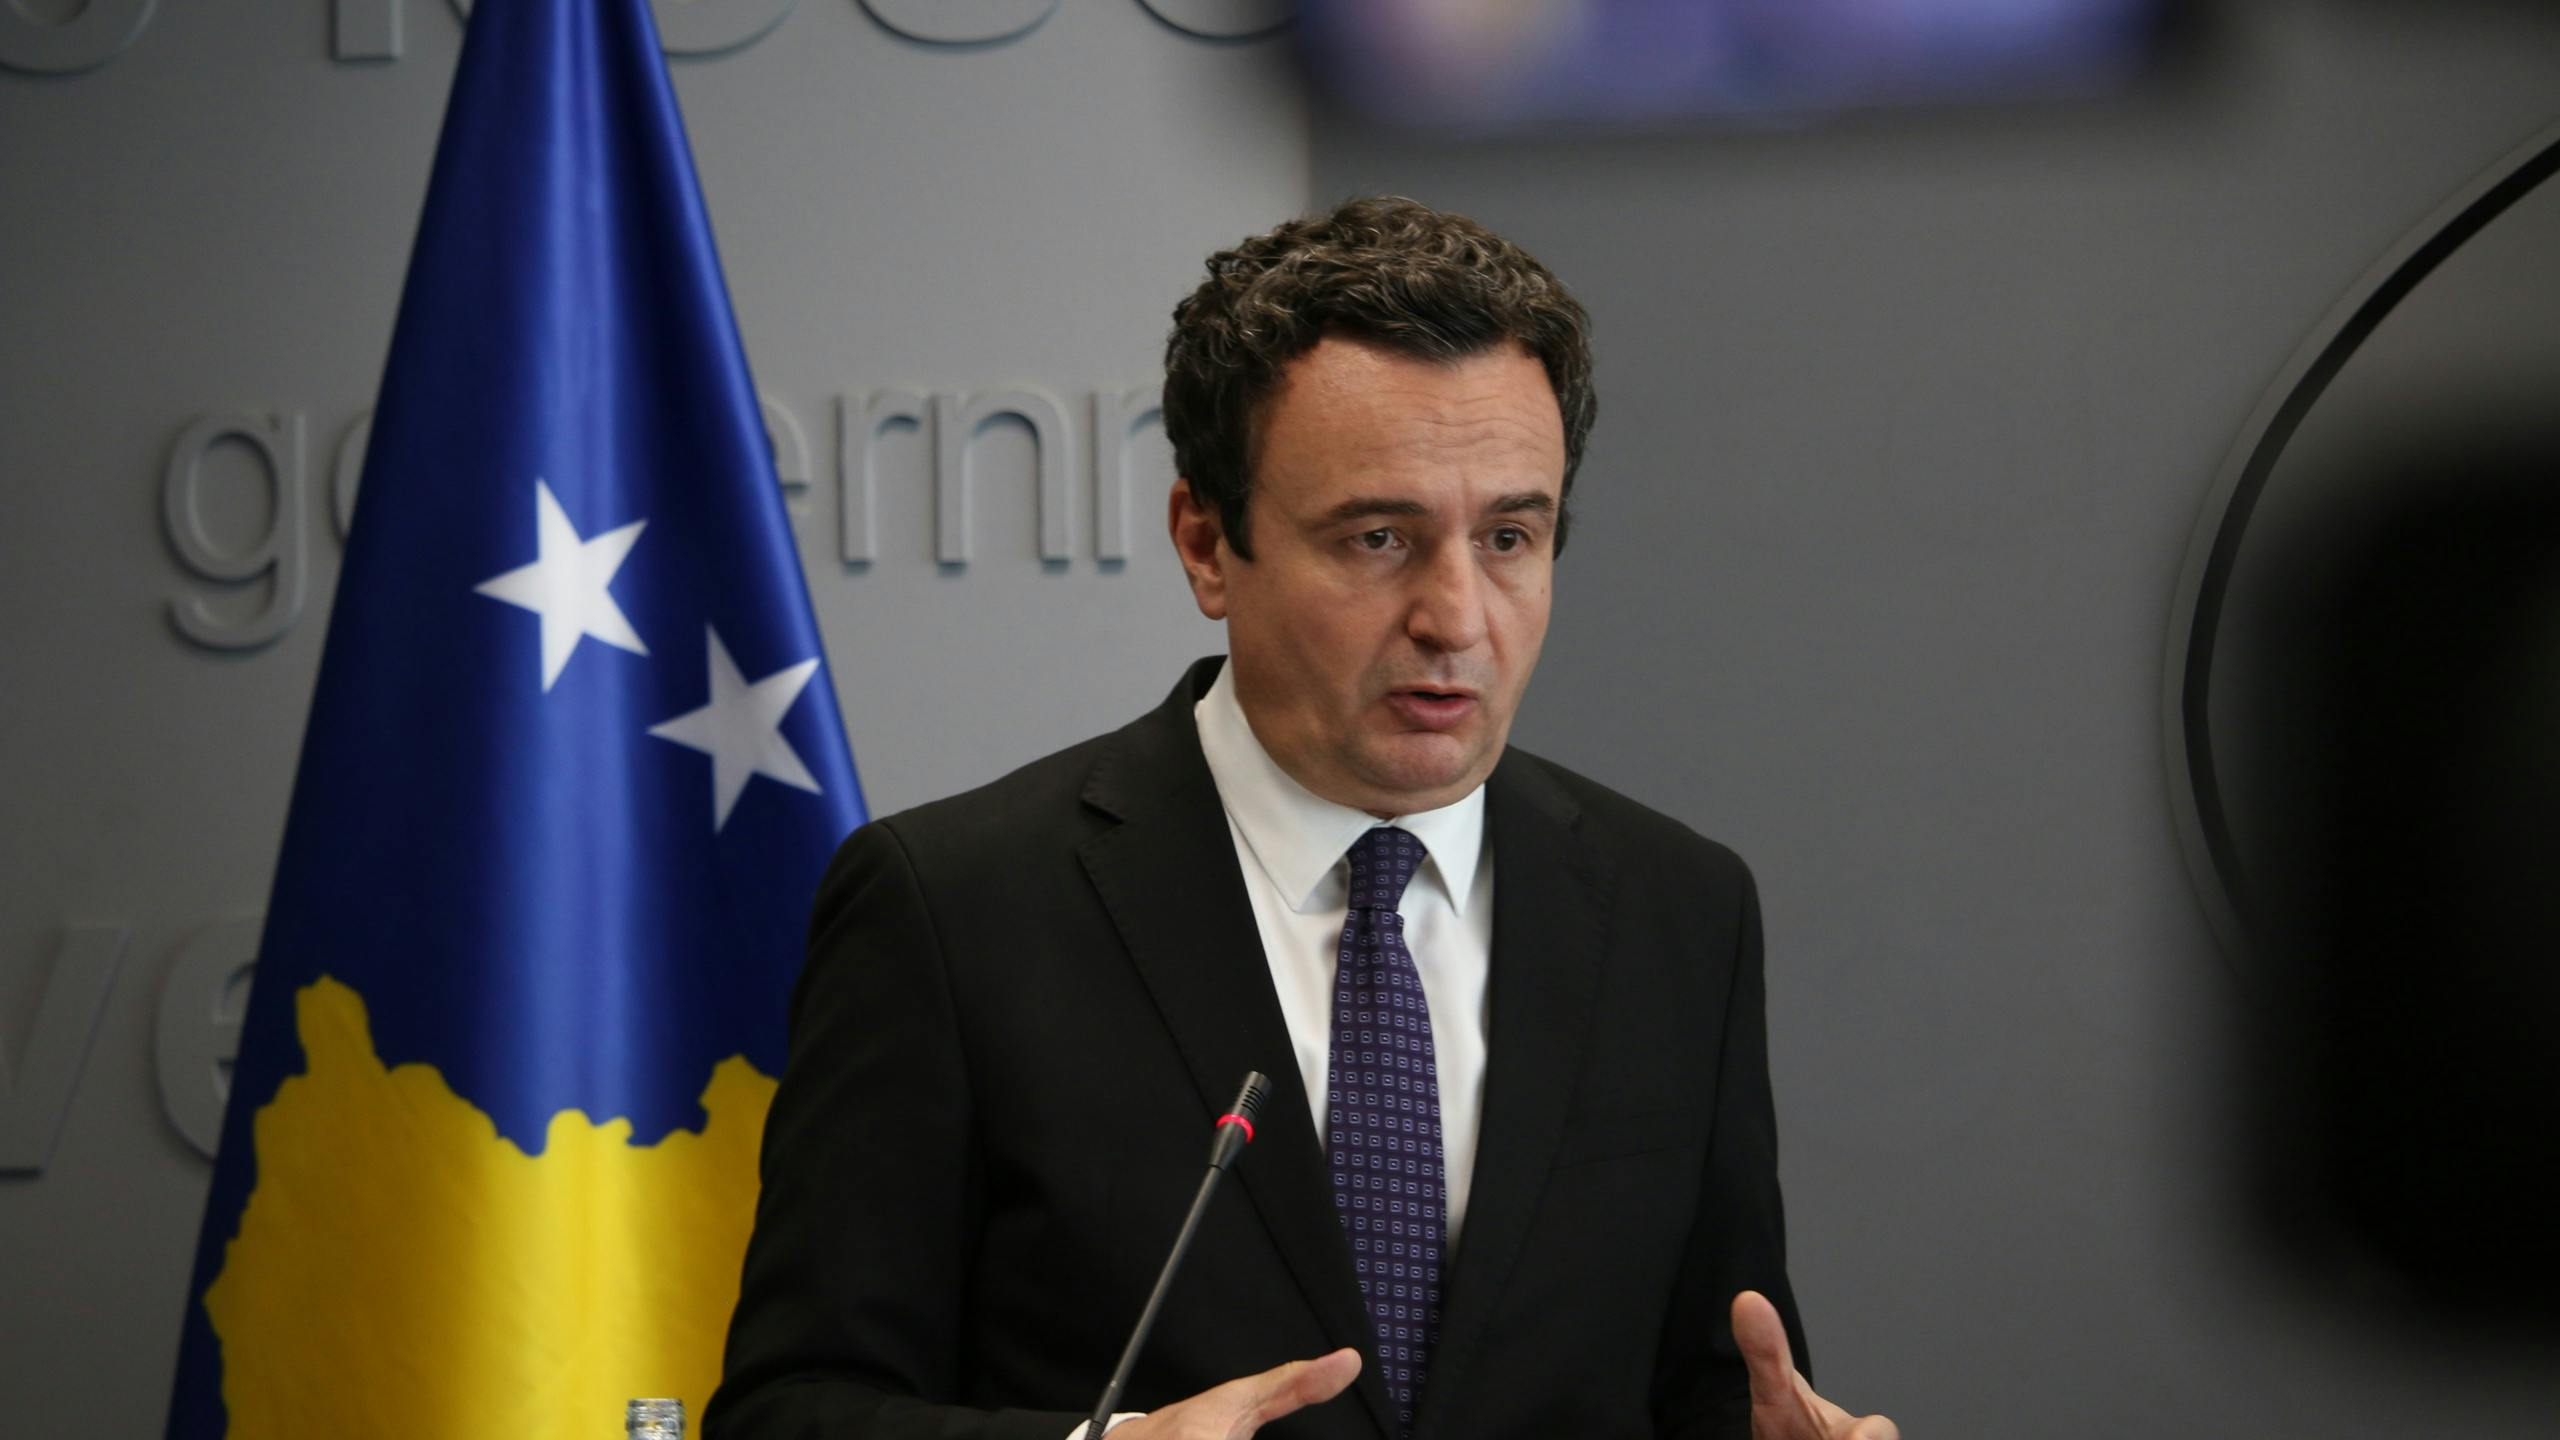 Kosovaarse premier: gesprekken met Servië op dood spoor